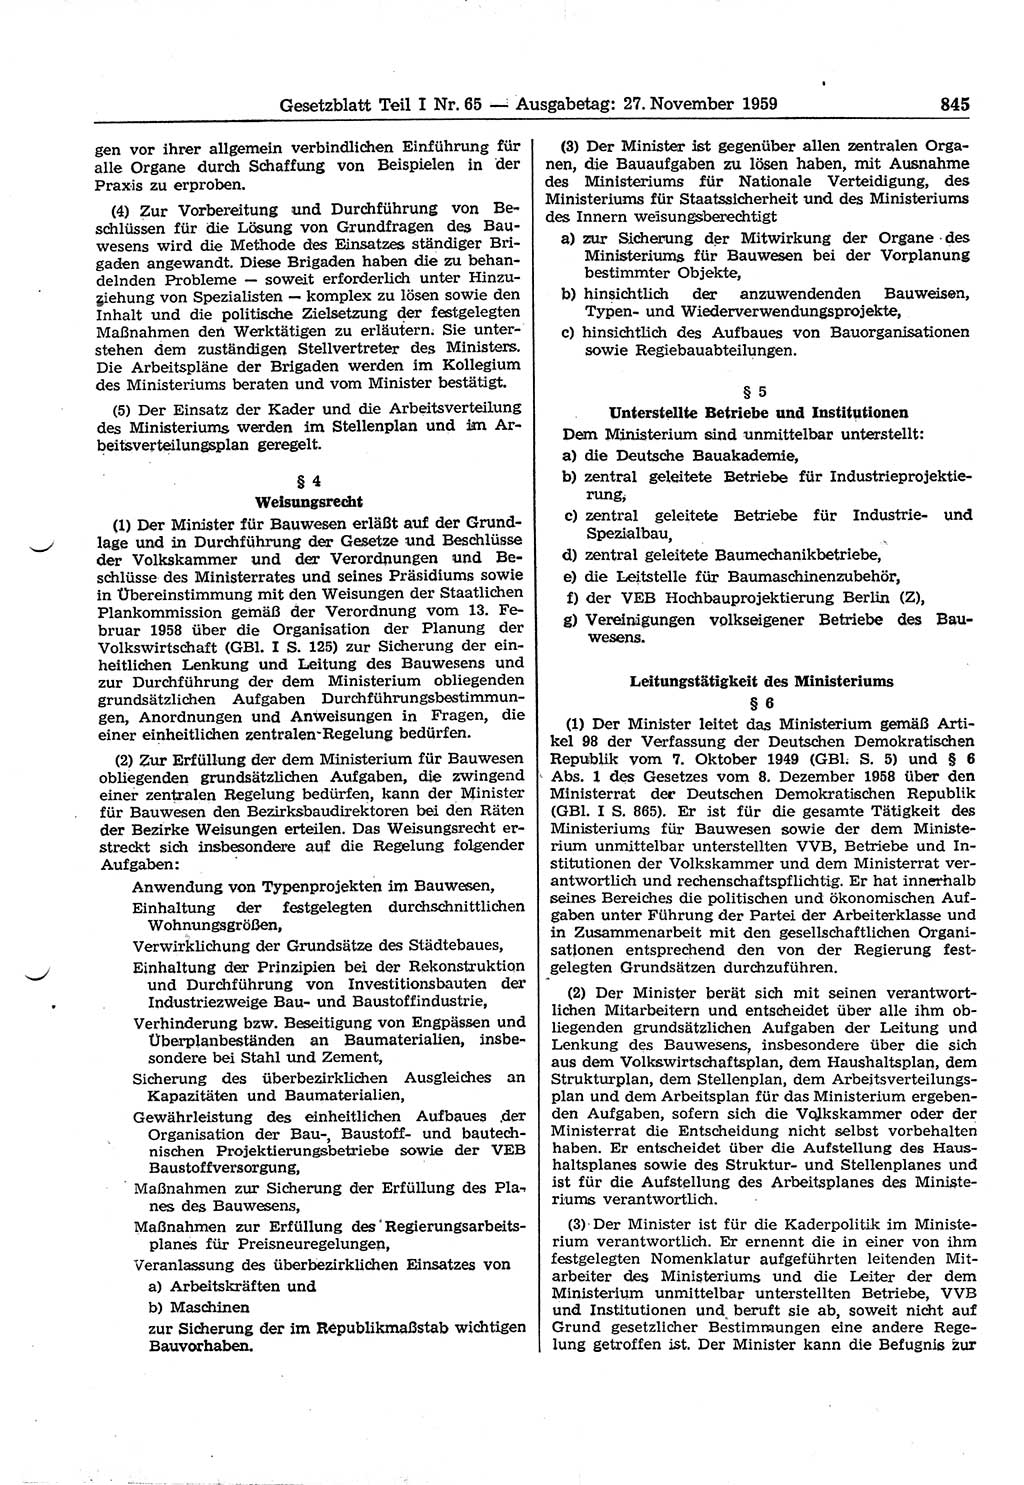 Gesetzblatt (GBl.) der Deutschen Demokratischen Republik (DDR) Teil Ⅰ 1959, Seite 845 (GBl. DDR Ⅰ 1959, S. 845)